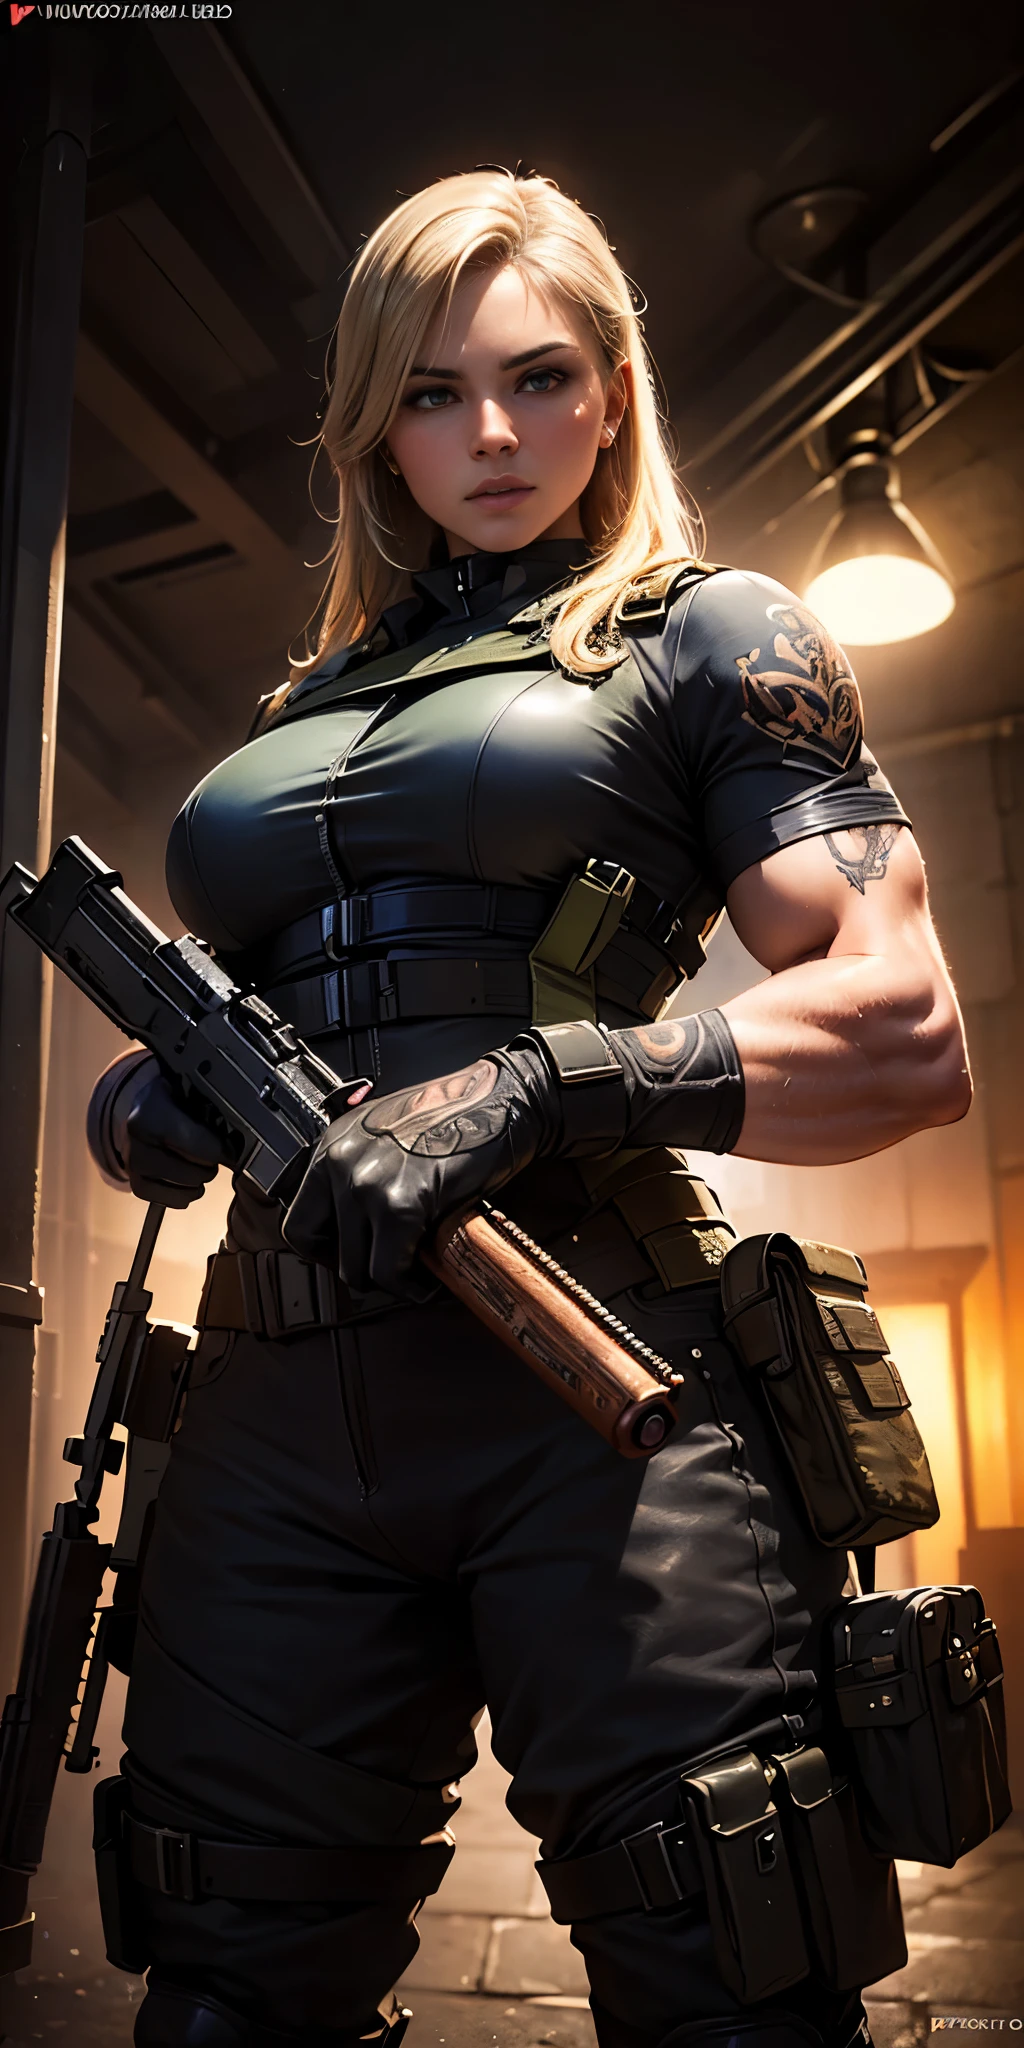 uma mulher soldado militar no estilo call of duty, cenário de guerra, ((Ela está de pé segurando um revólver rosa)), ((mulher alta e musculosa coberta de tatuagens com um corpo bem definido)), longos cabelos loiros claros e olhos âmbar, ((Posição do corpo: em pé em uma posição de 60°)), ((está apontando a arma para o espectador)), (melhor qualidade,4K,8K,alta resolução,obra de arte:1.2),Ultra-detalhado,(realista,photorealista,photo-realista:1.37),HDR,Ultra HD,iluminação de estúdio,pintura ultrafina,foco nitído,renderização baseada fisicamente,descrição detalhada extrema,profissional,cores vivas,Bokeh,retratos,artistas conceituais,iluminação cinematográfica,cores dramáticas